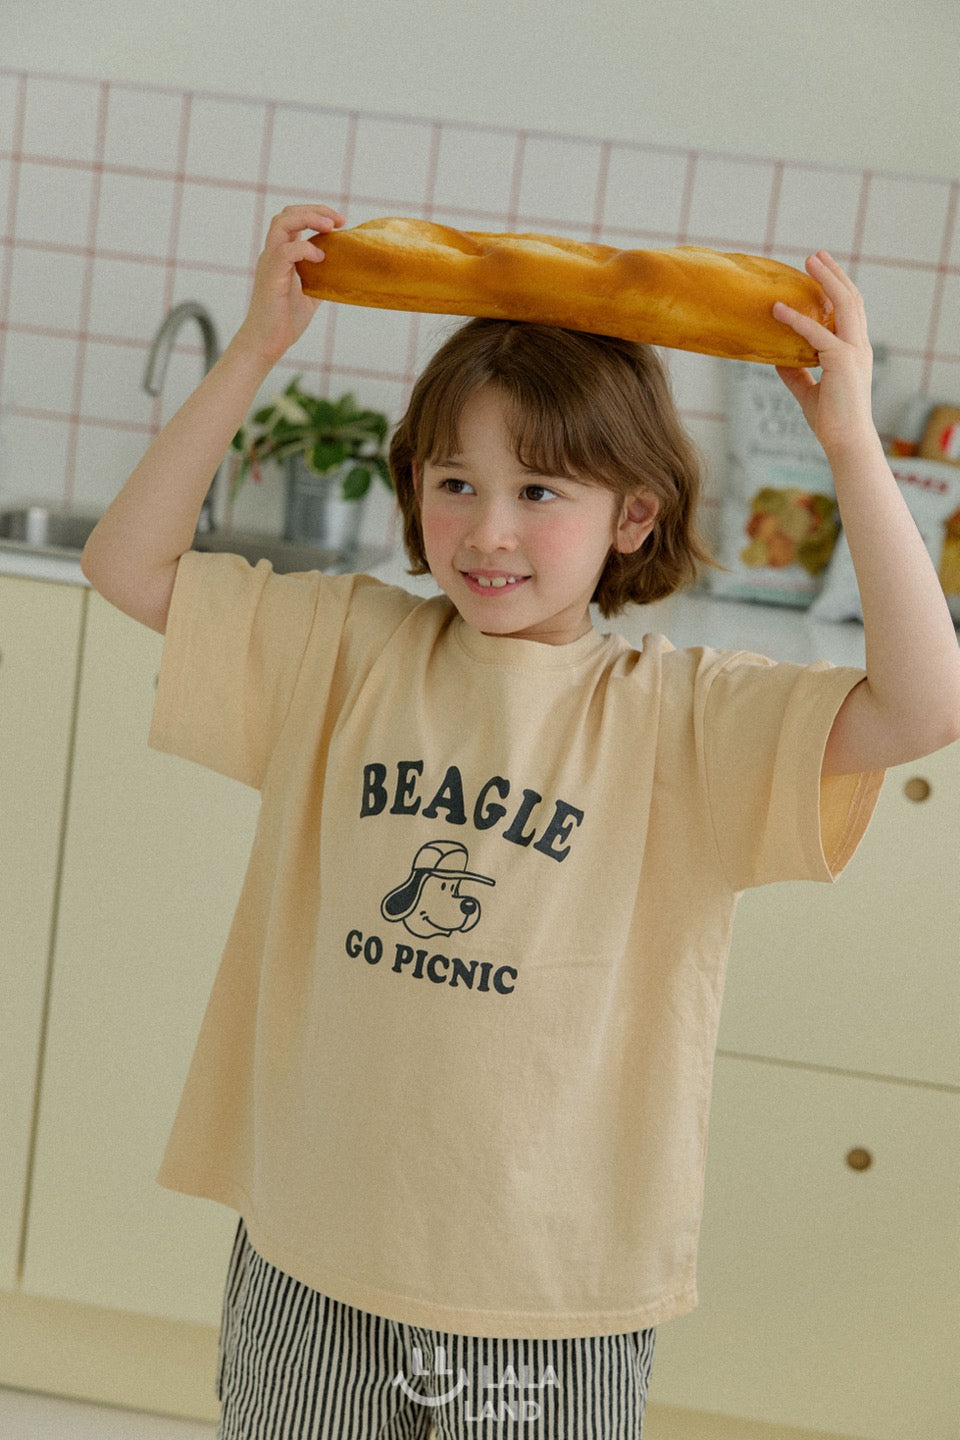 [Lala Land] Beagle T-Shirts